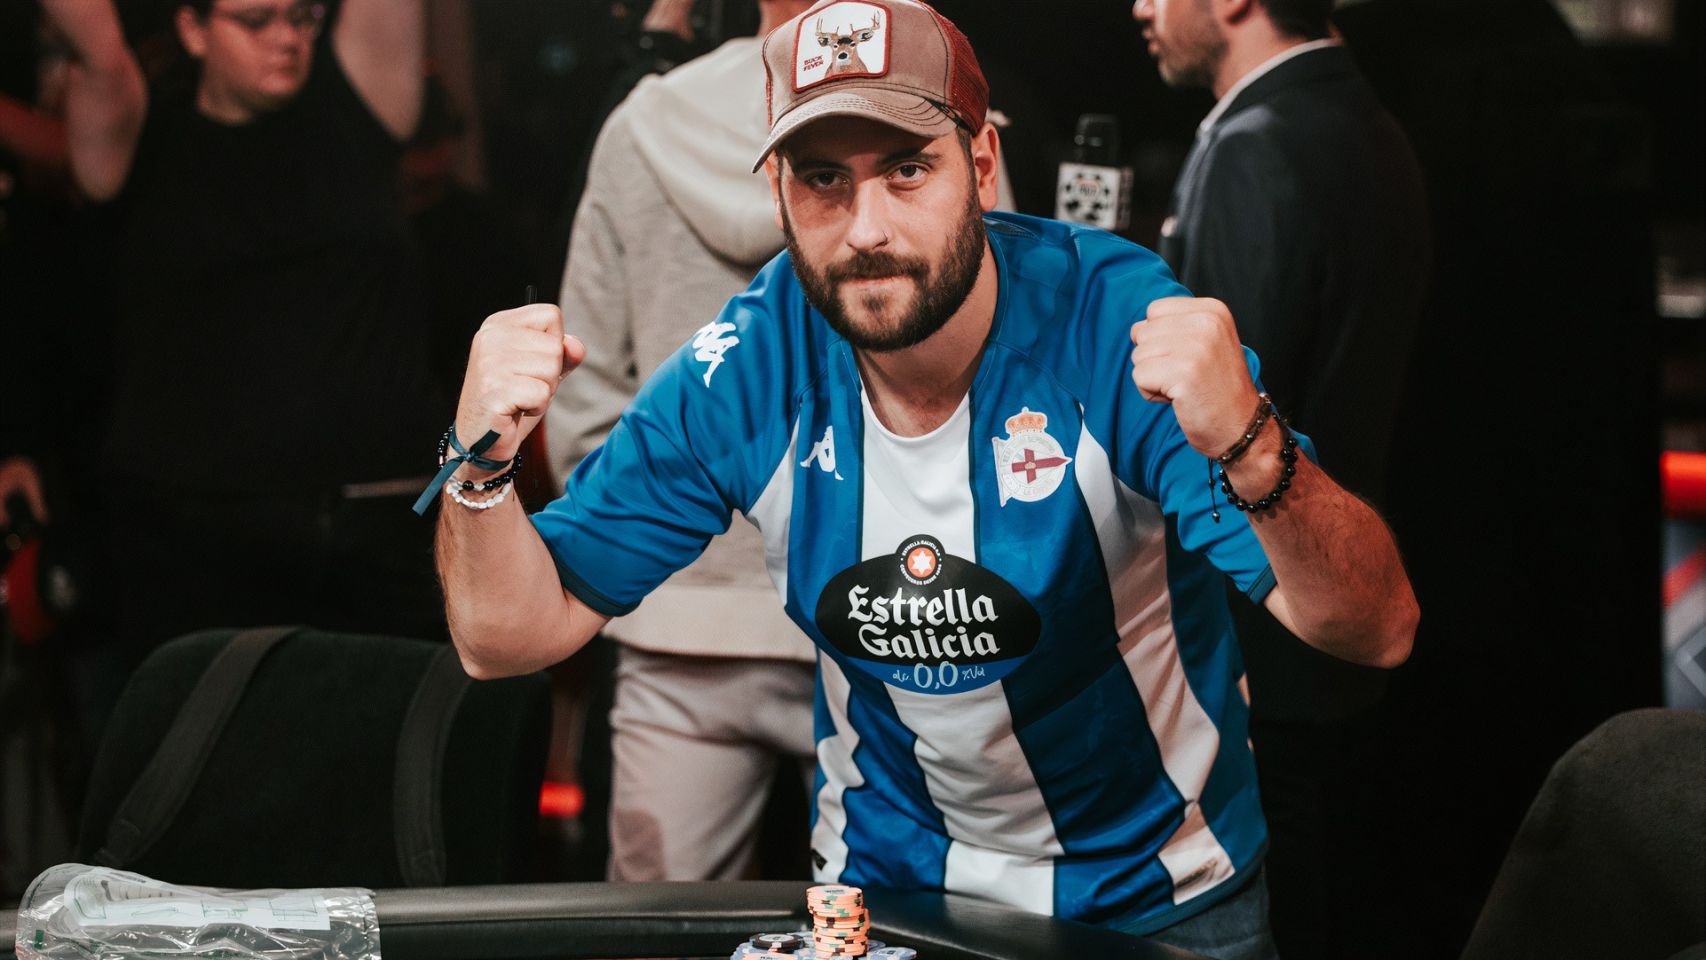 Un coruñés vestido del Dépor puede ganar 12 millones en el mayor torneo de póker del mundo